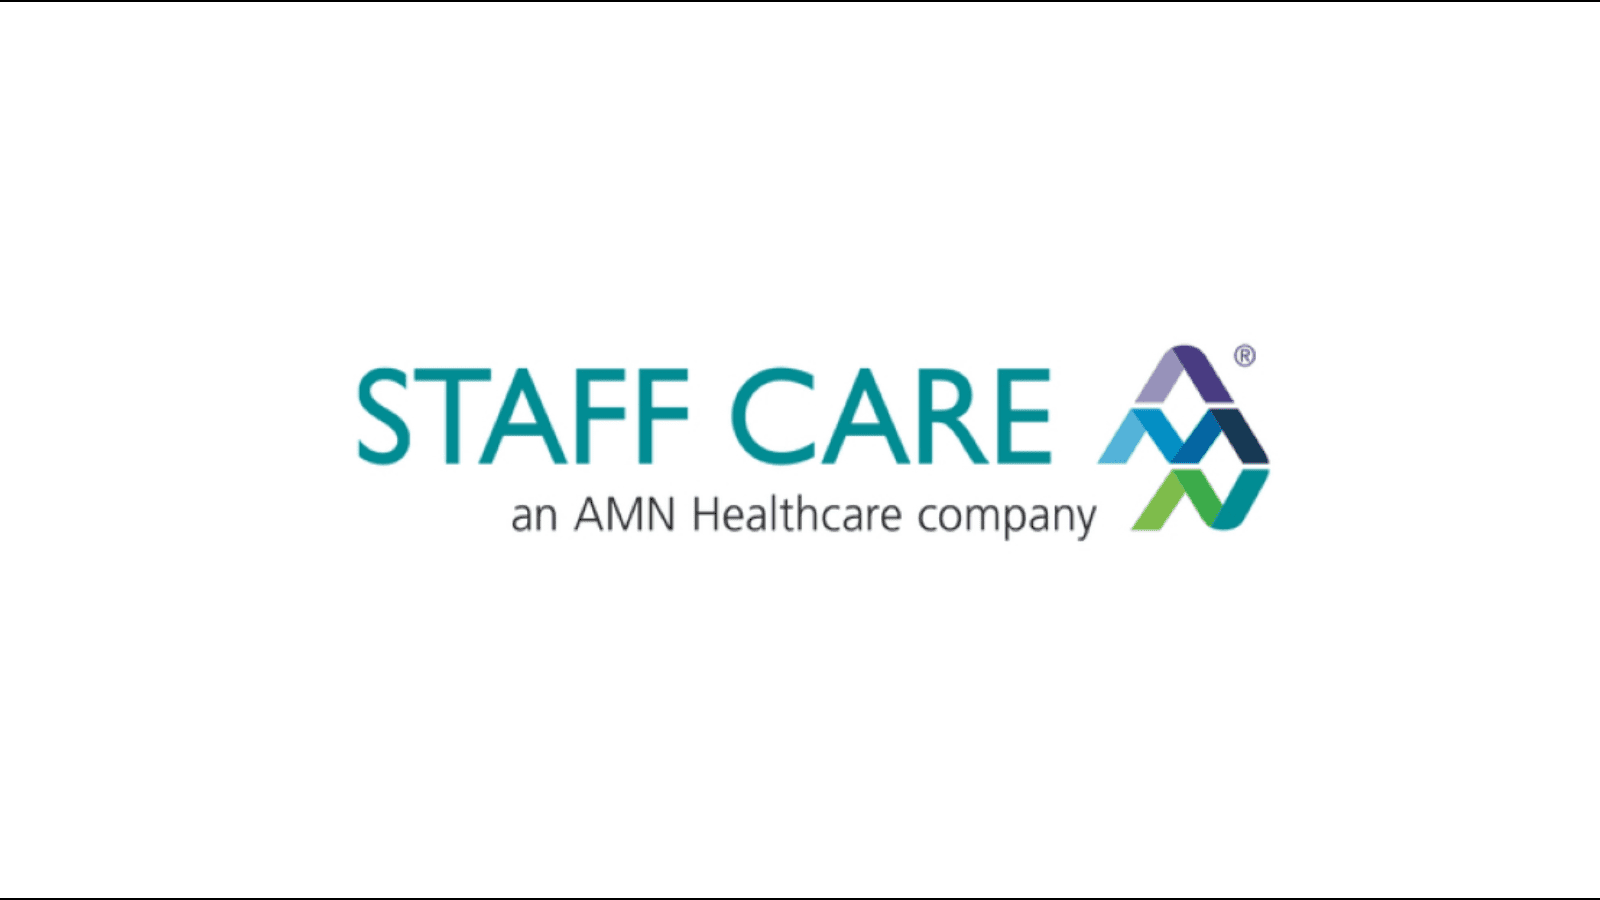 Staff care logo